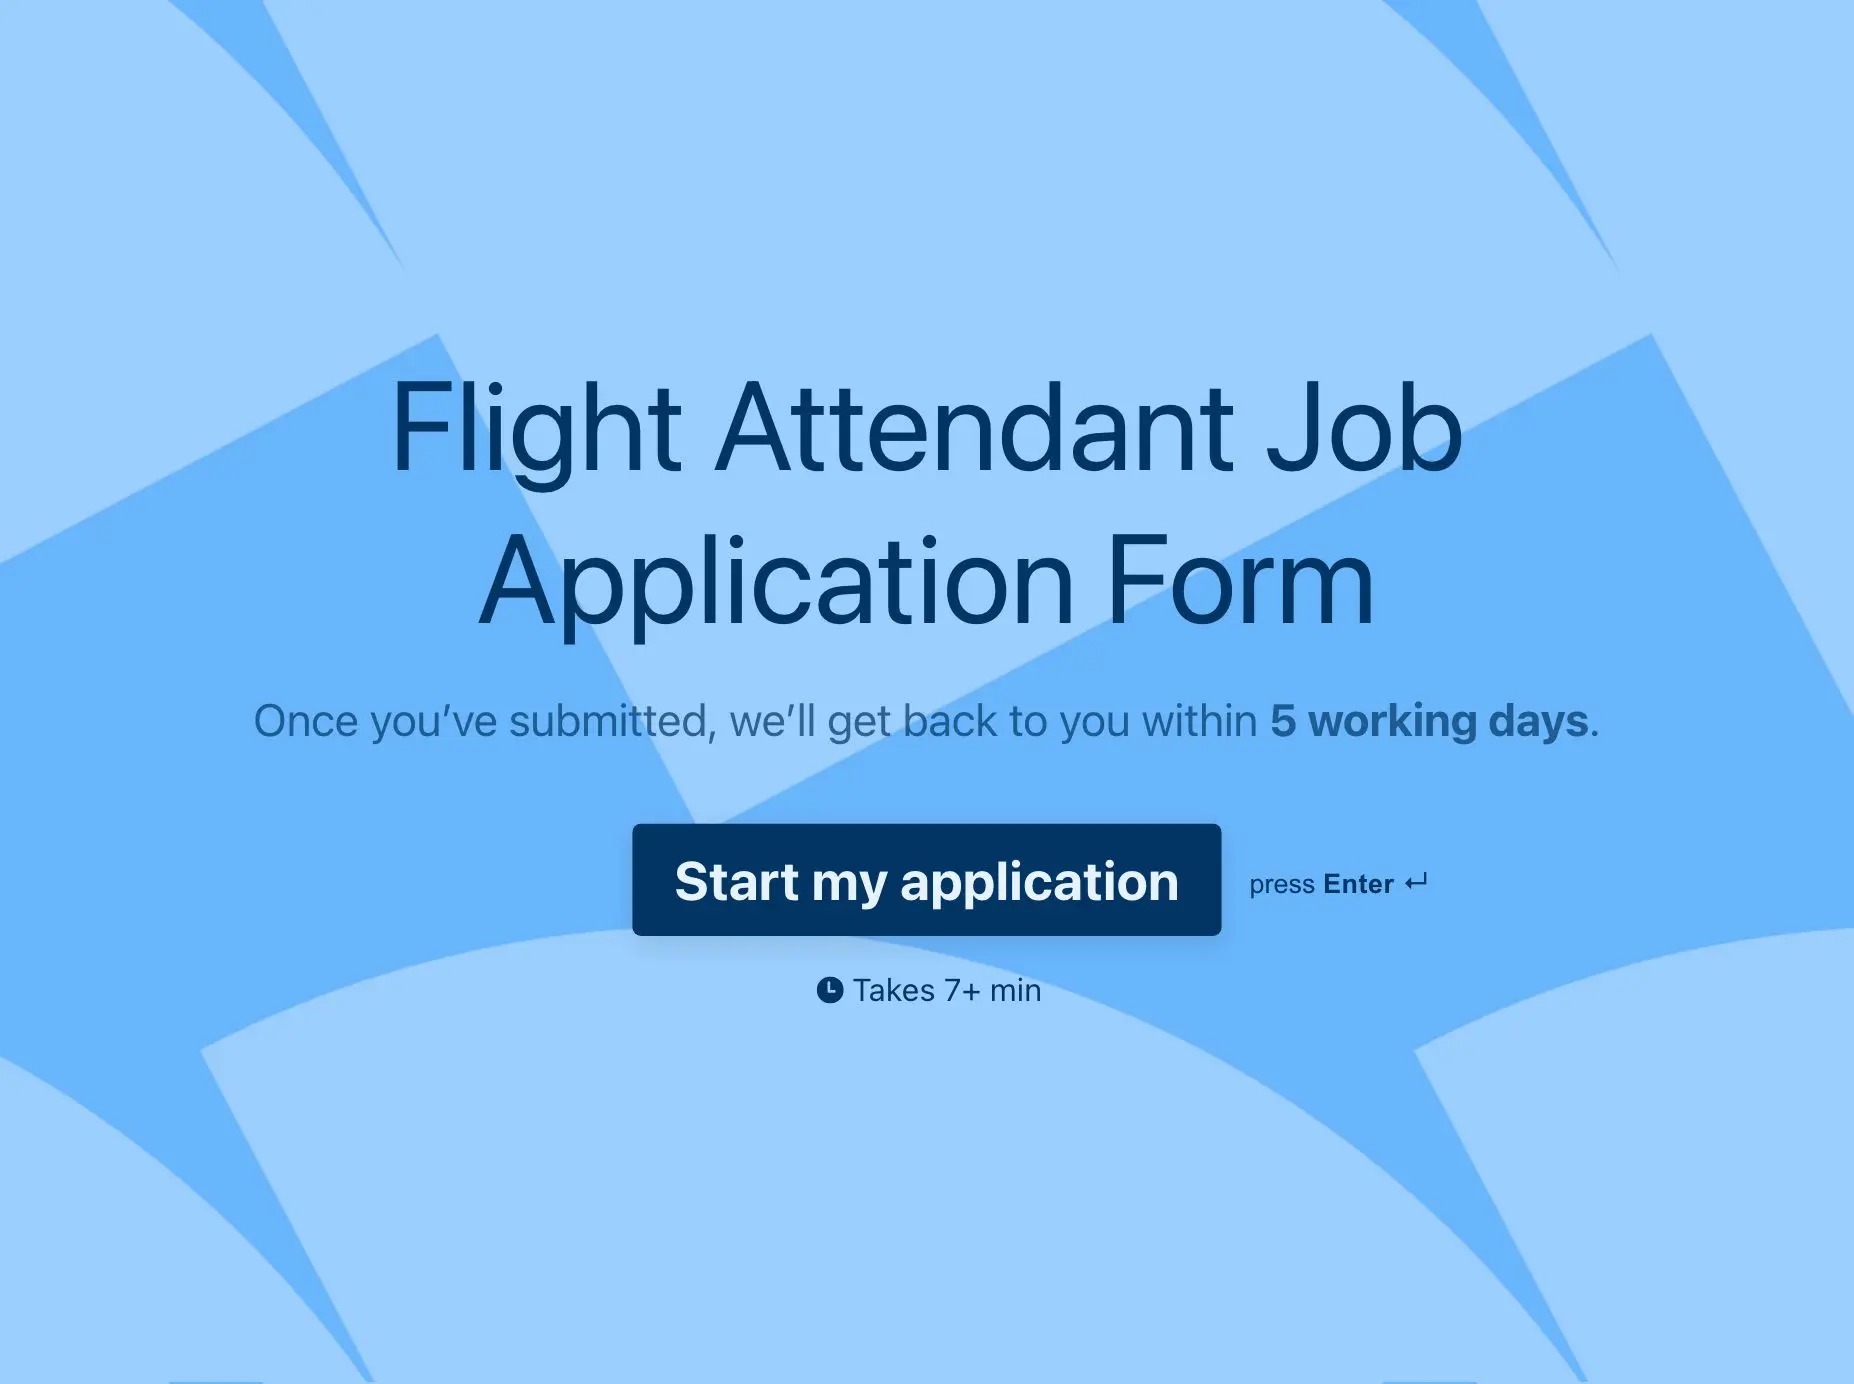 Flight Attendant Job Application Form Template Hero